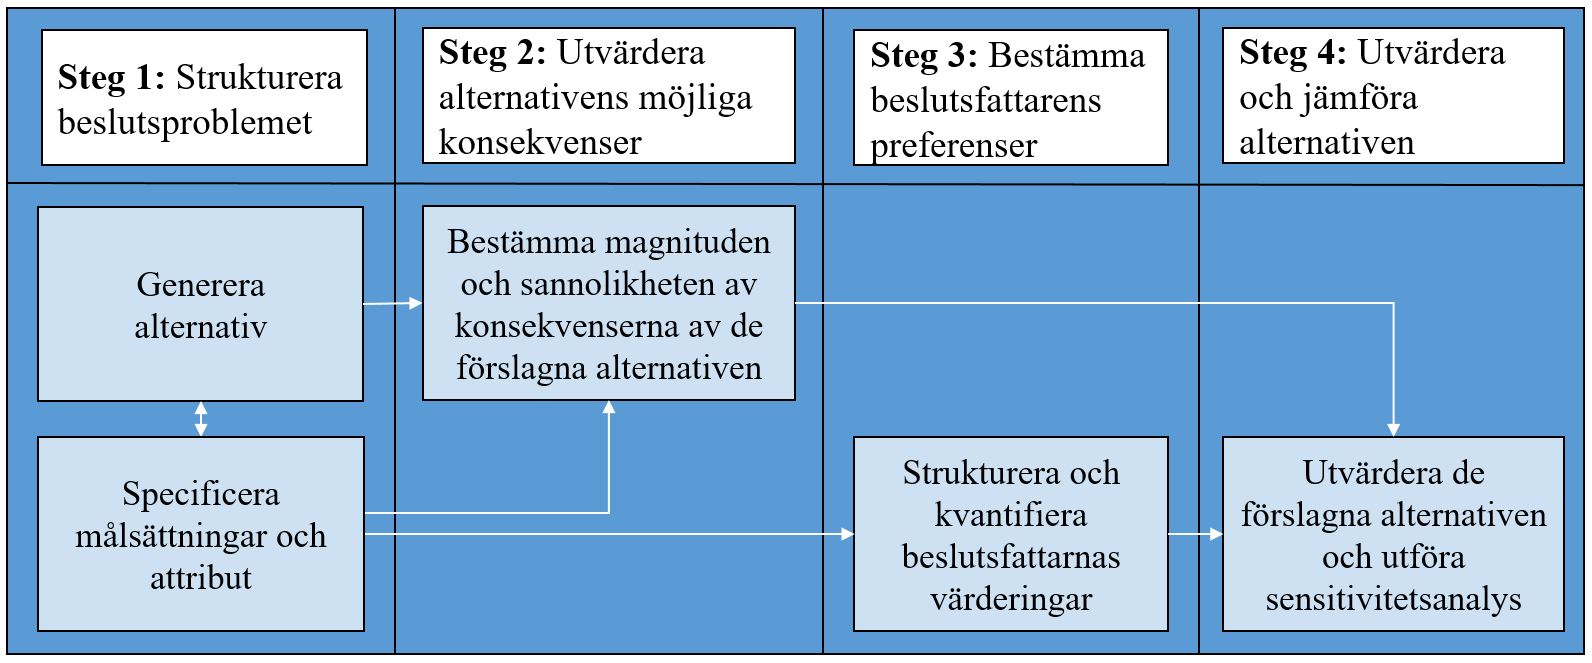 10 3.2 Beslutsanalysens metodik I gur 2 presenteras Keeneys (1982) beslutsanalys fyra steg. Dessa går ofta in i varandra och analysprocessen är dynamisk.